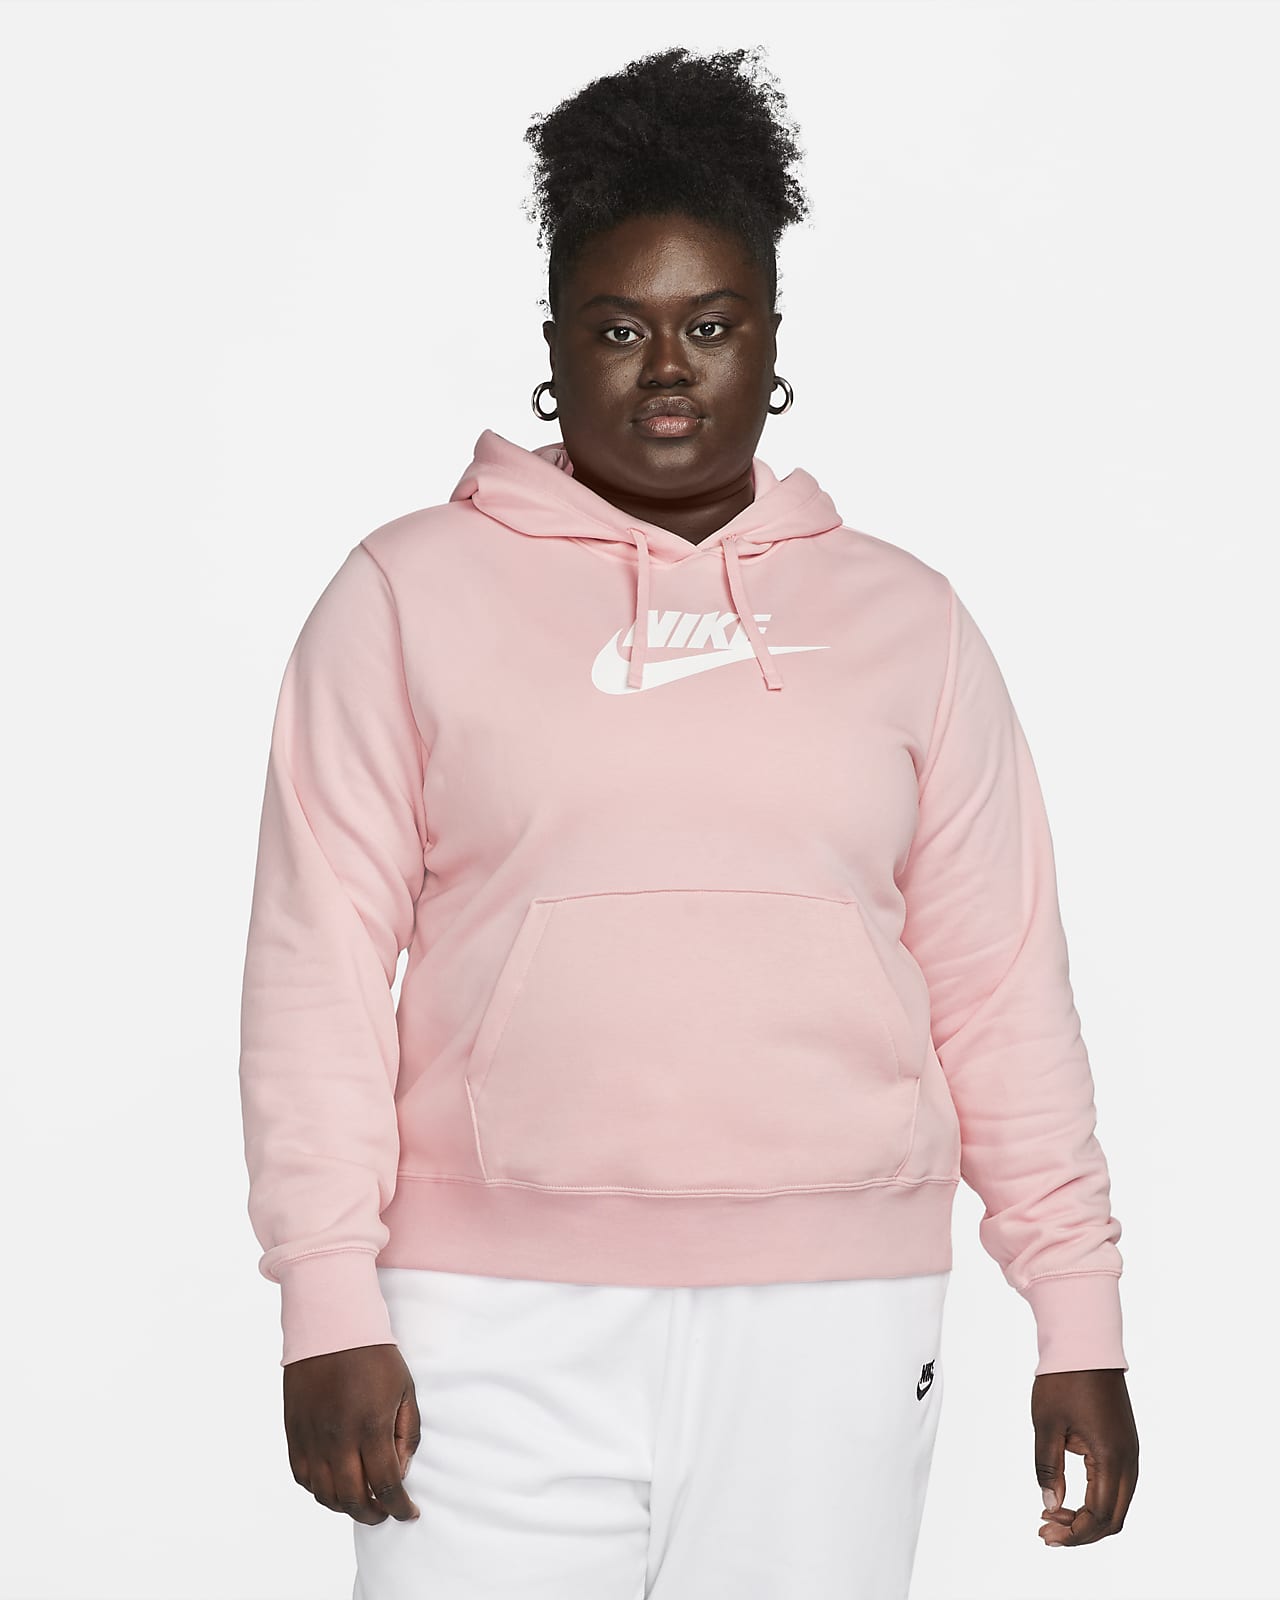 Tyggegummi Pygmalion skulder Nike Sportswear Club Fleece Women's Pullover Hoodie (Plus Size). Nike.com